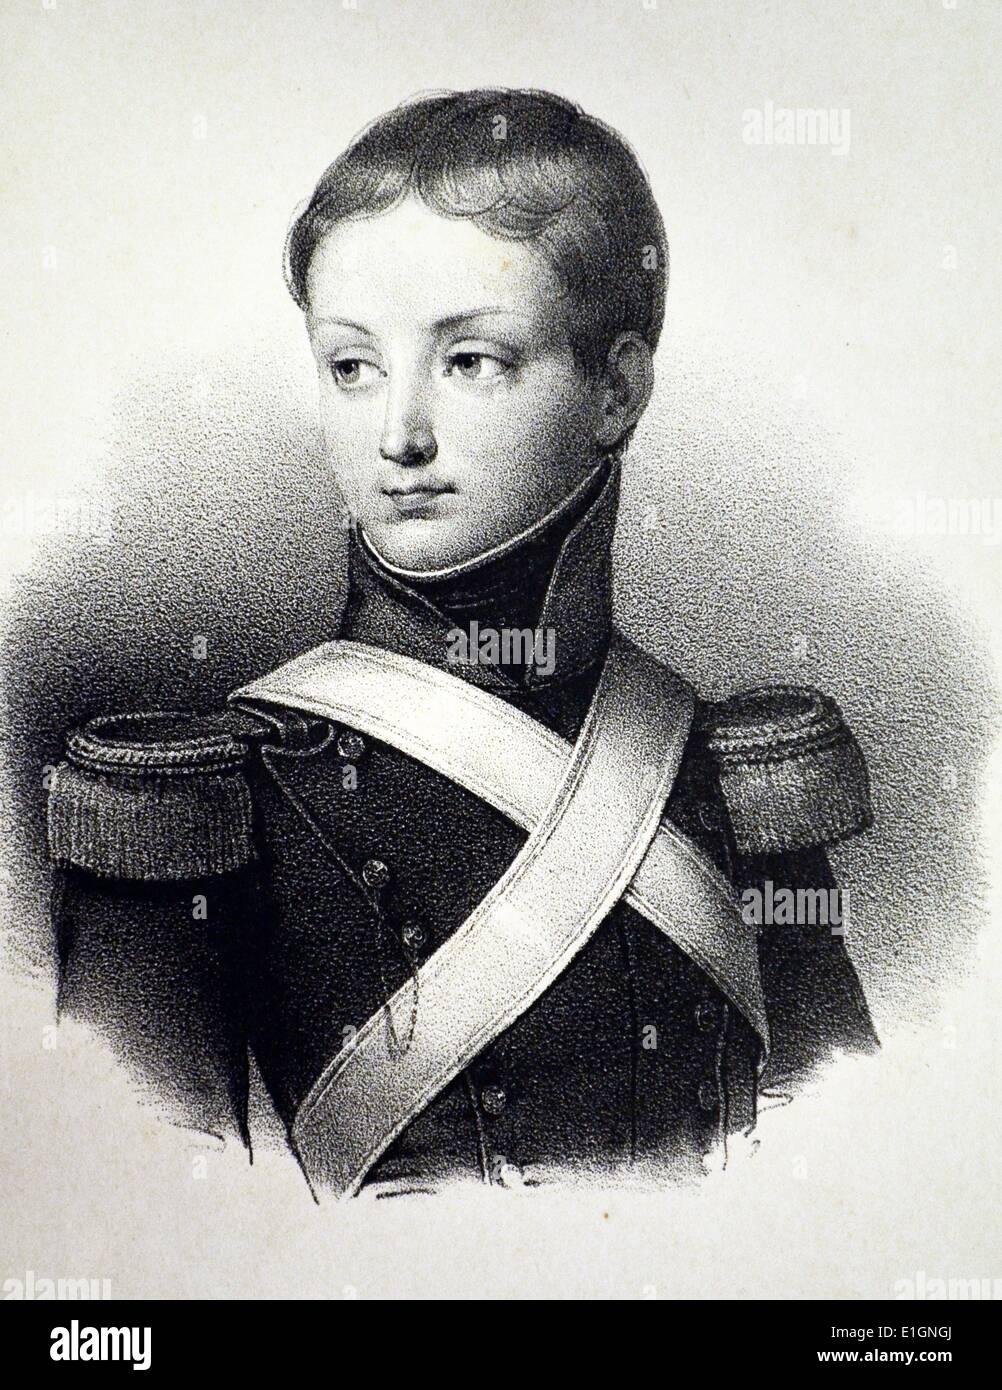 Francois, Príncipe de Joinville (1818-1900), tercer hijo de Luis Felipe I de Francia. Litografía, París, c1840. Foto de stock